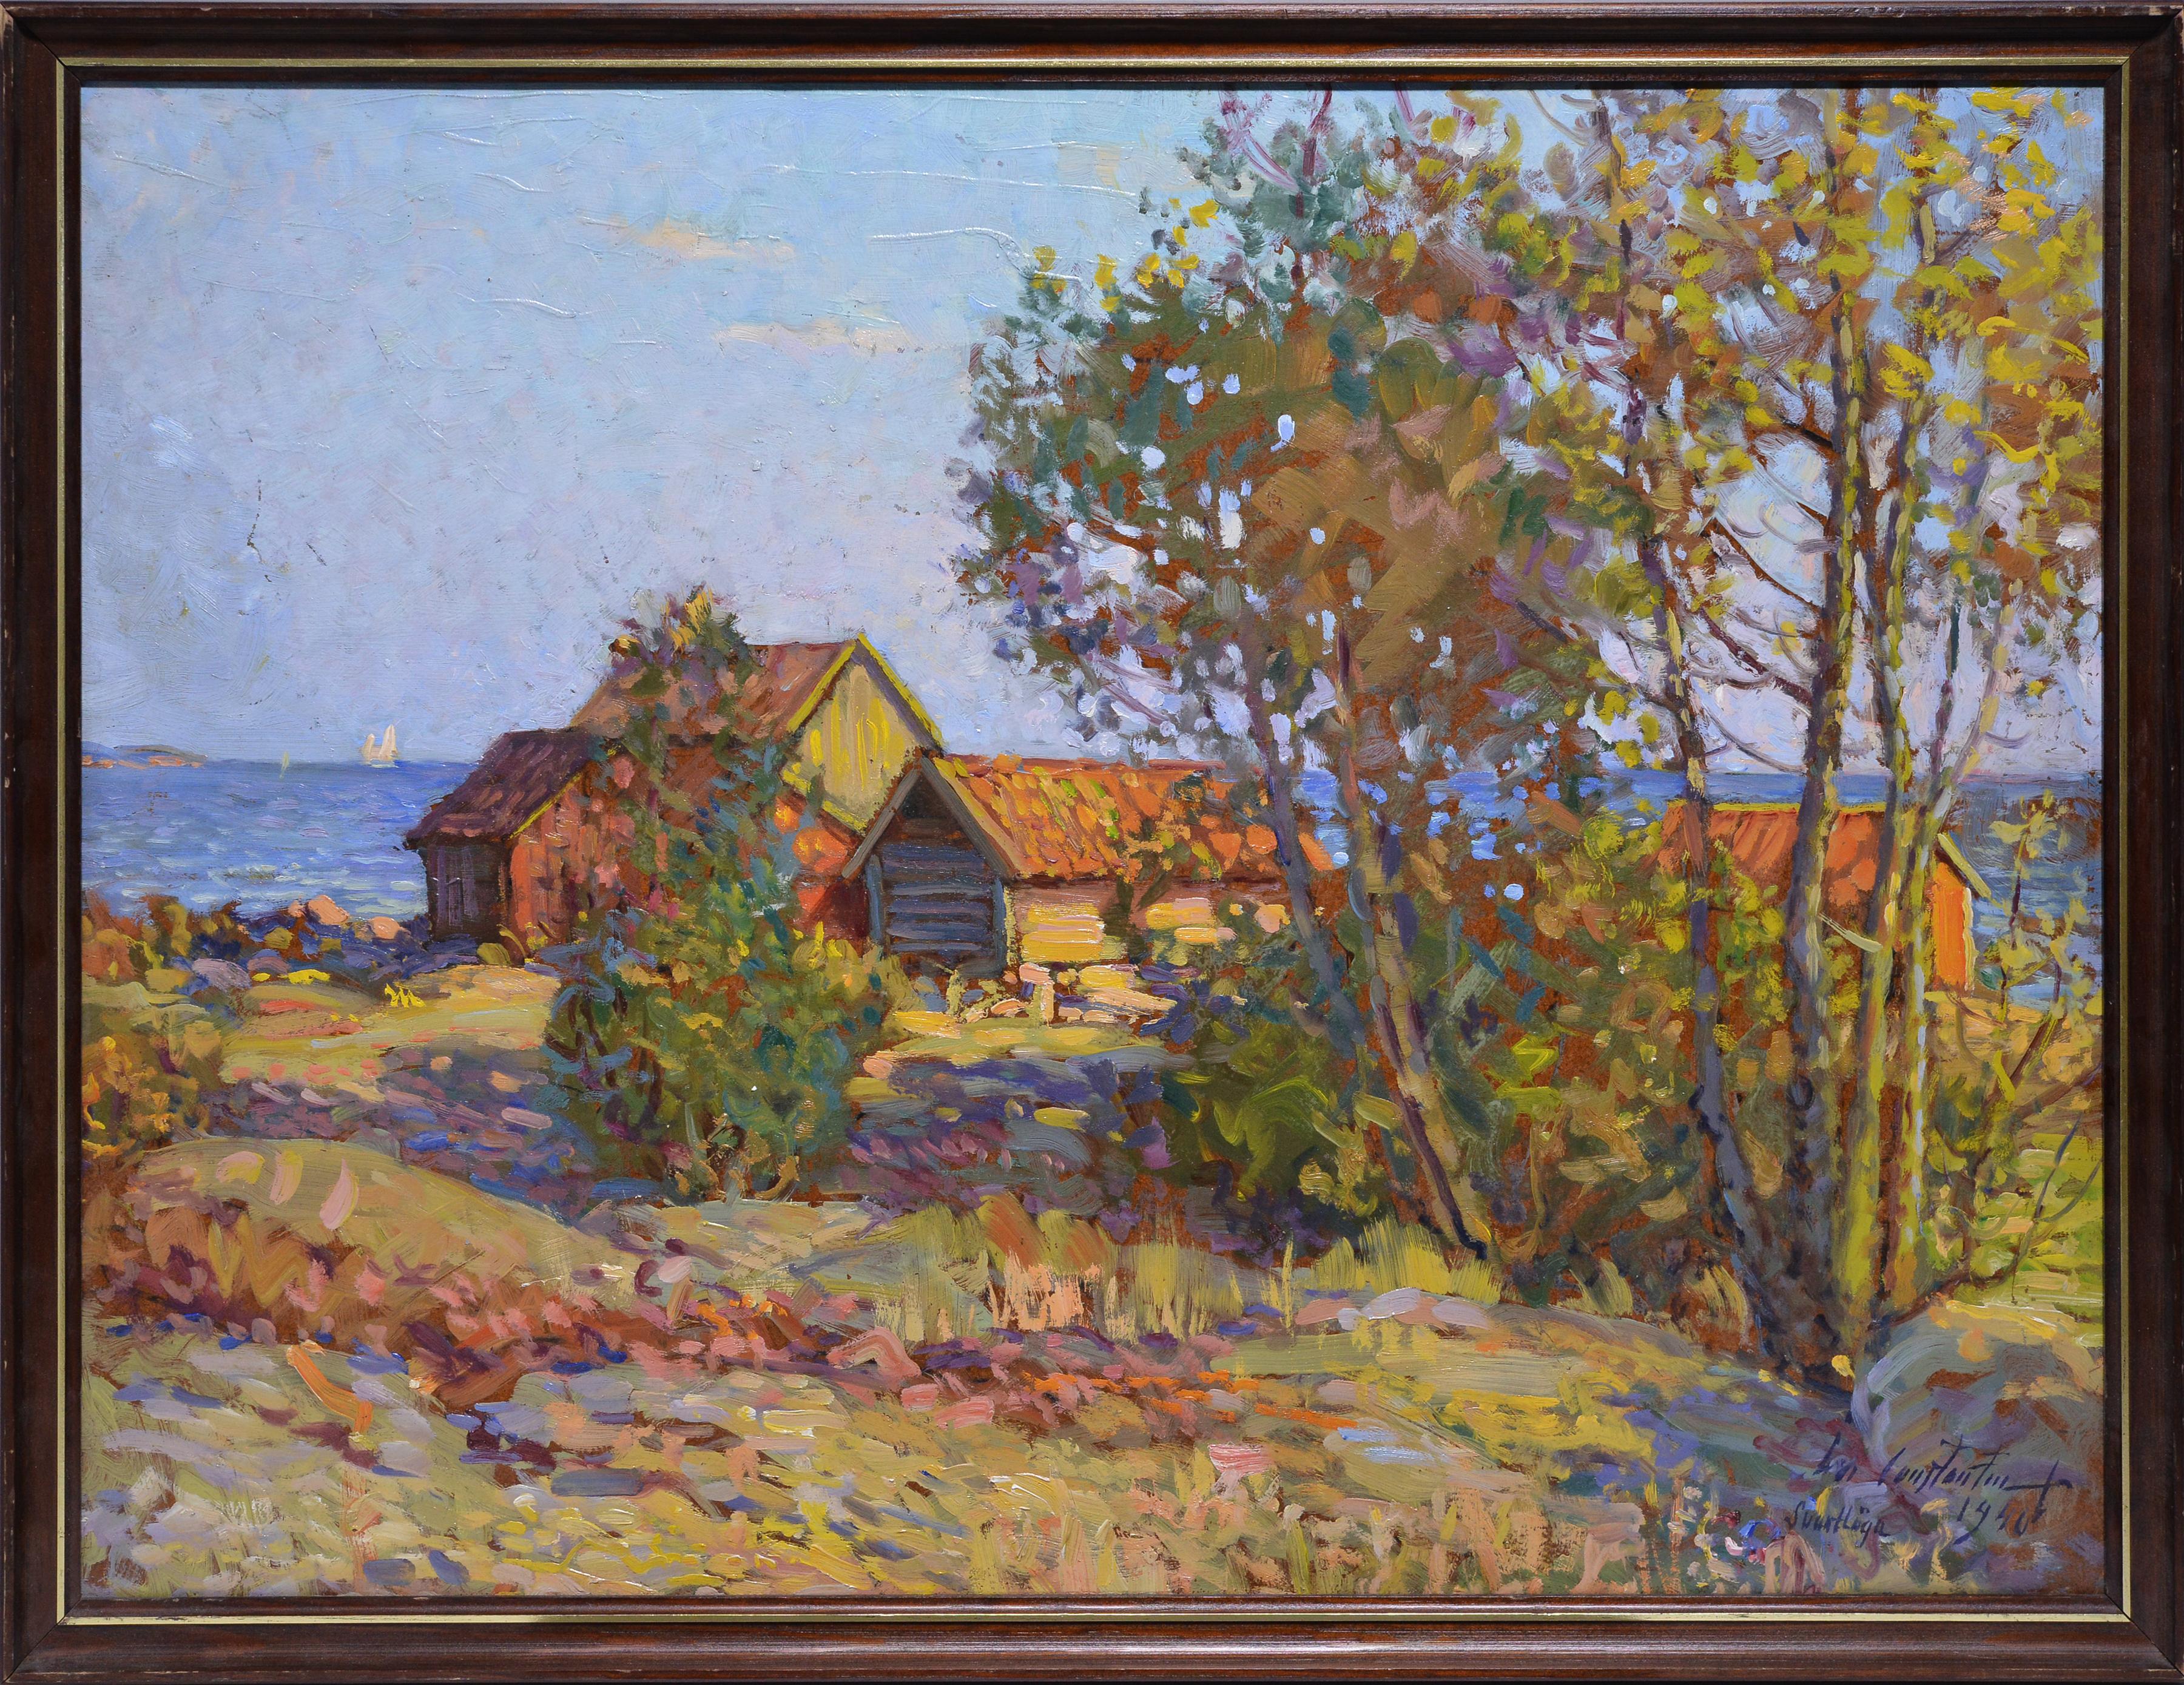 Stockholmer Archipelago-Landschaft 1940, Ölgemälde, bekannter impressionistischer Künstler 